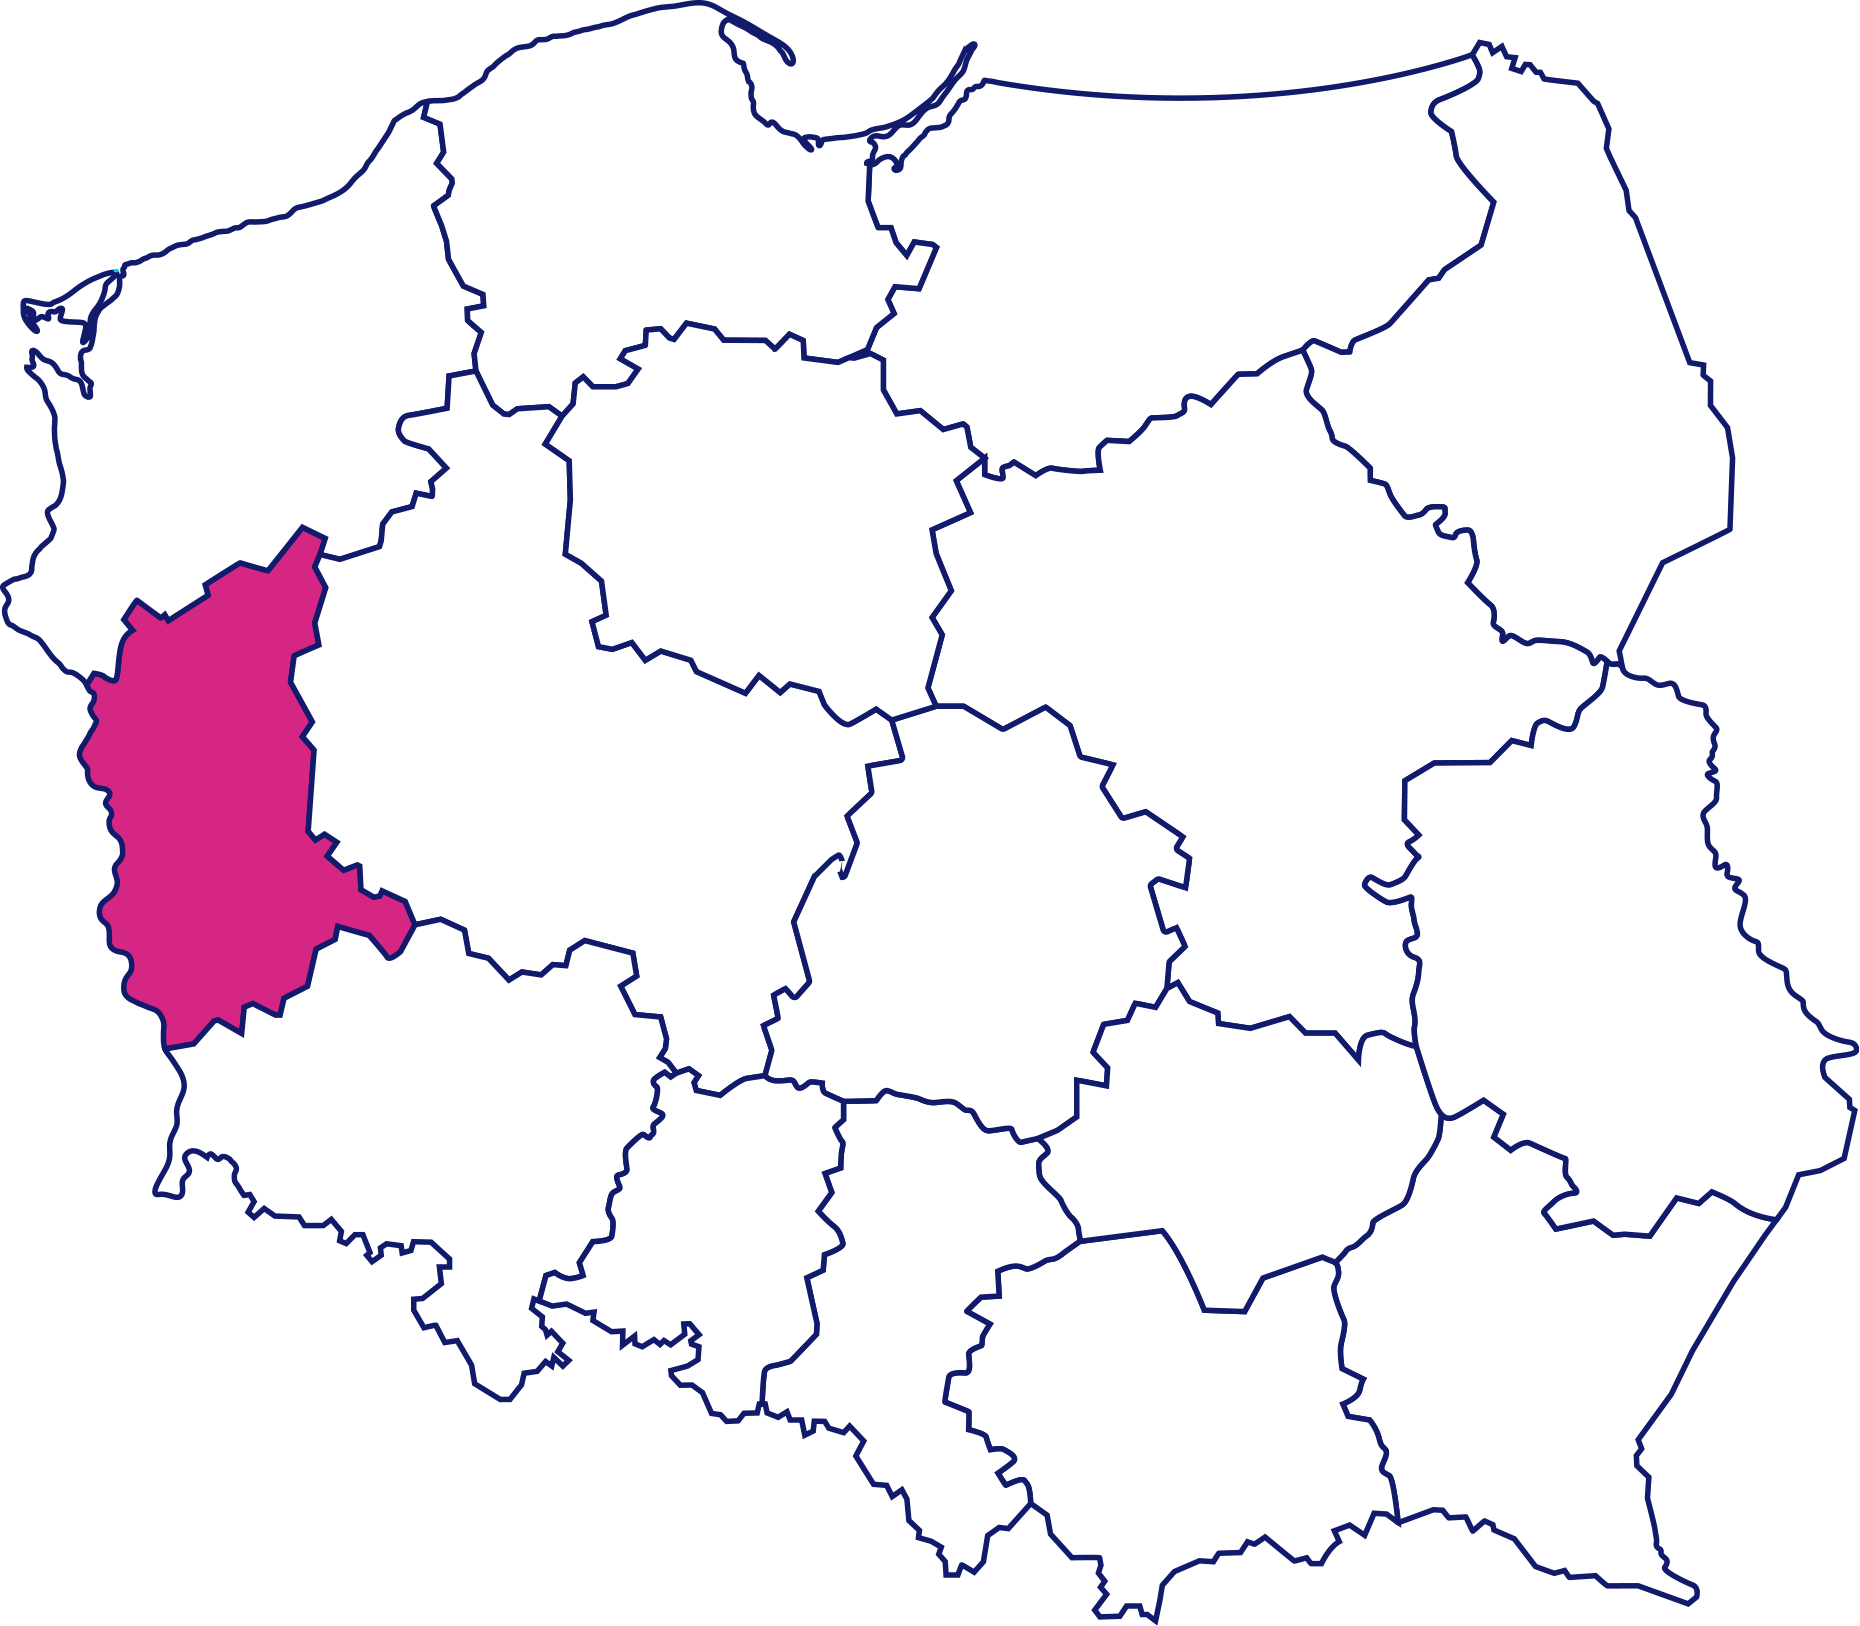 Grafika przedstawia mapę Polski z zaznaczonym na różowo województwem lubuskim.